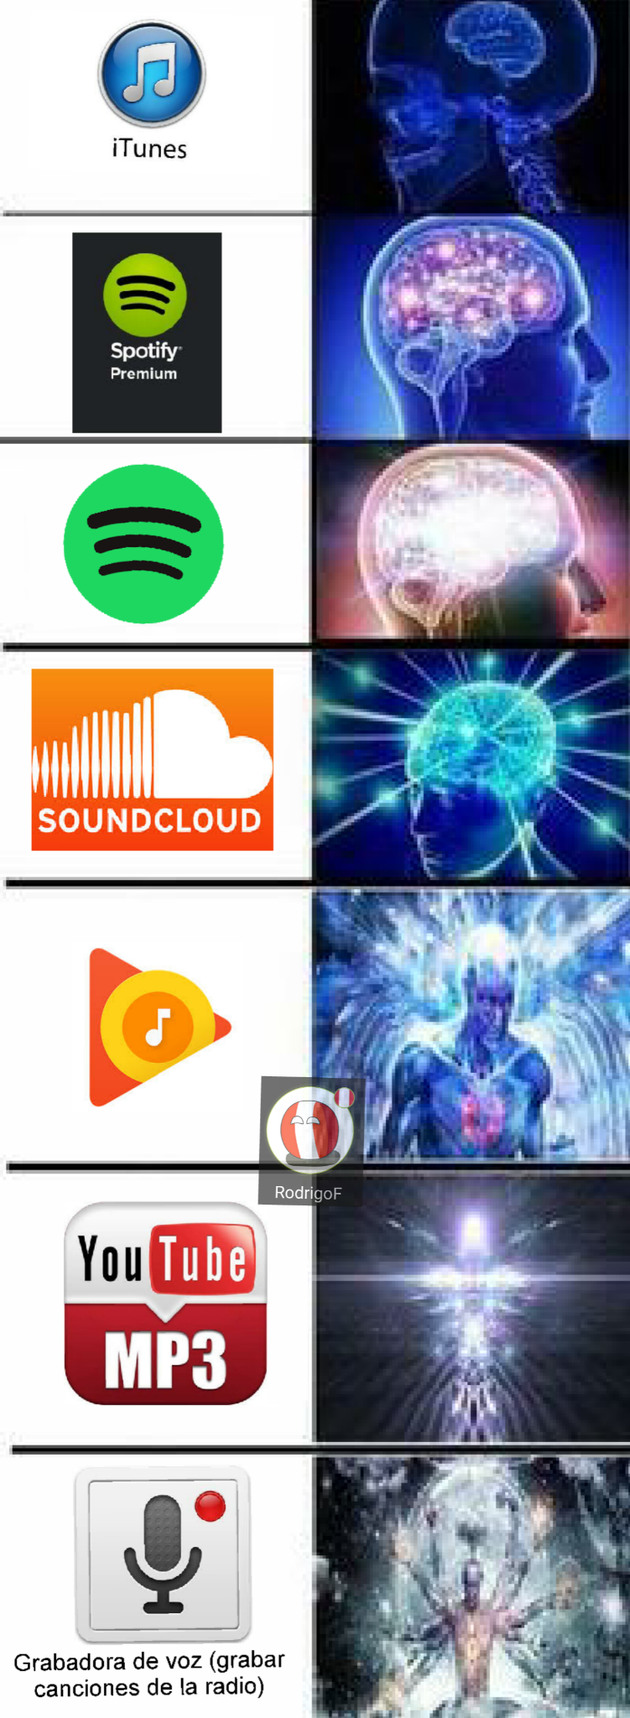 Spotify premium $_$ - meme